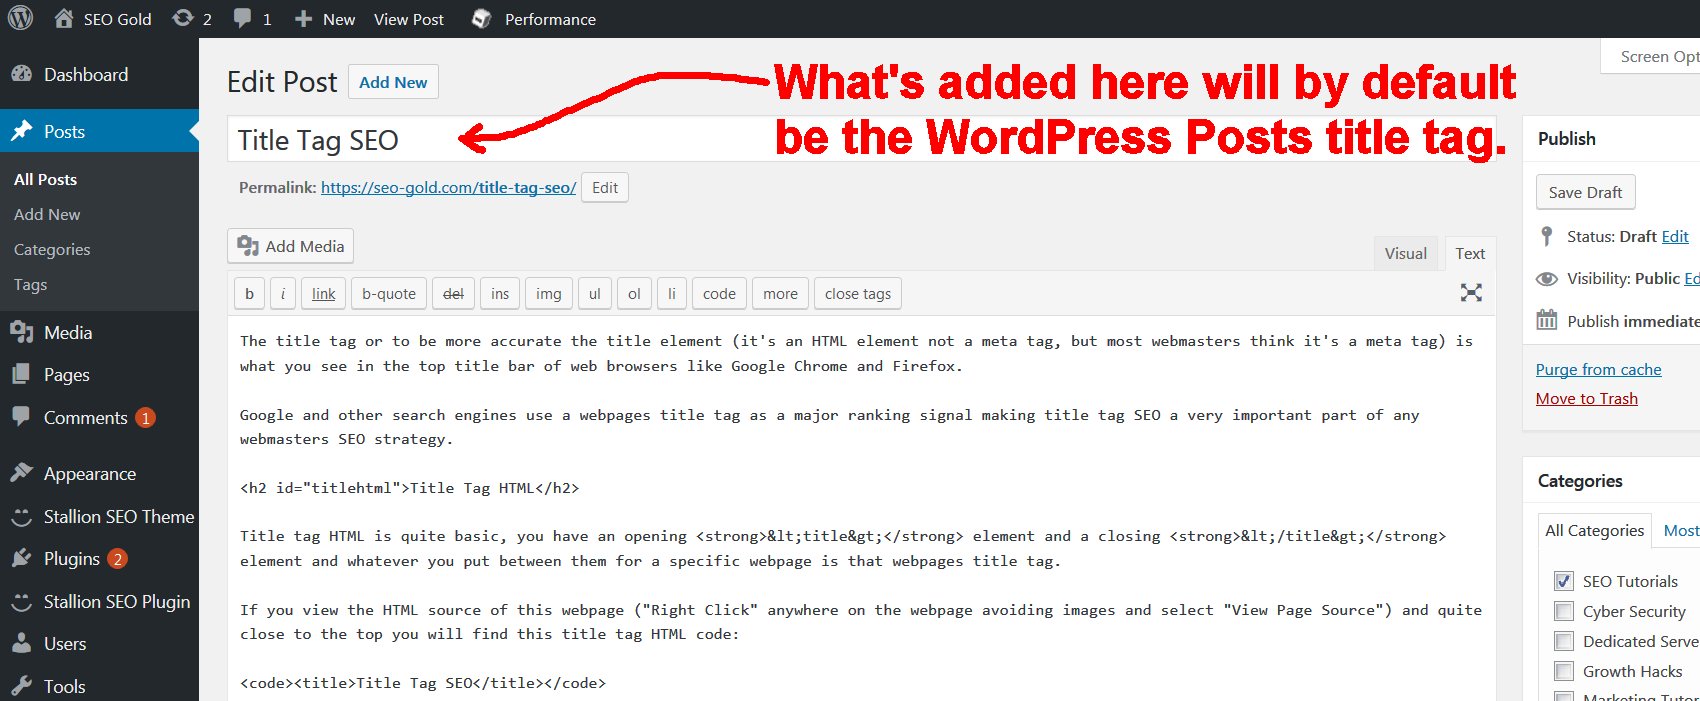 Wordpress tags